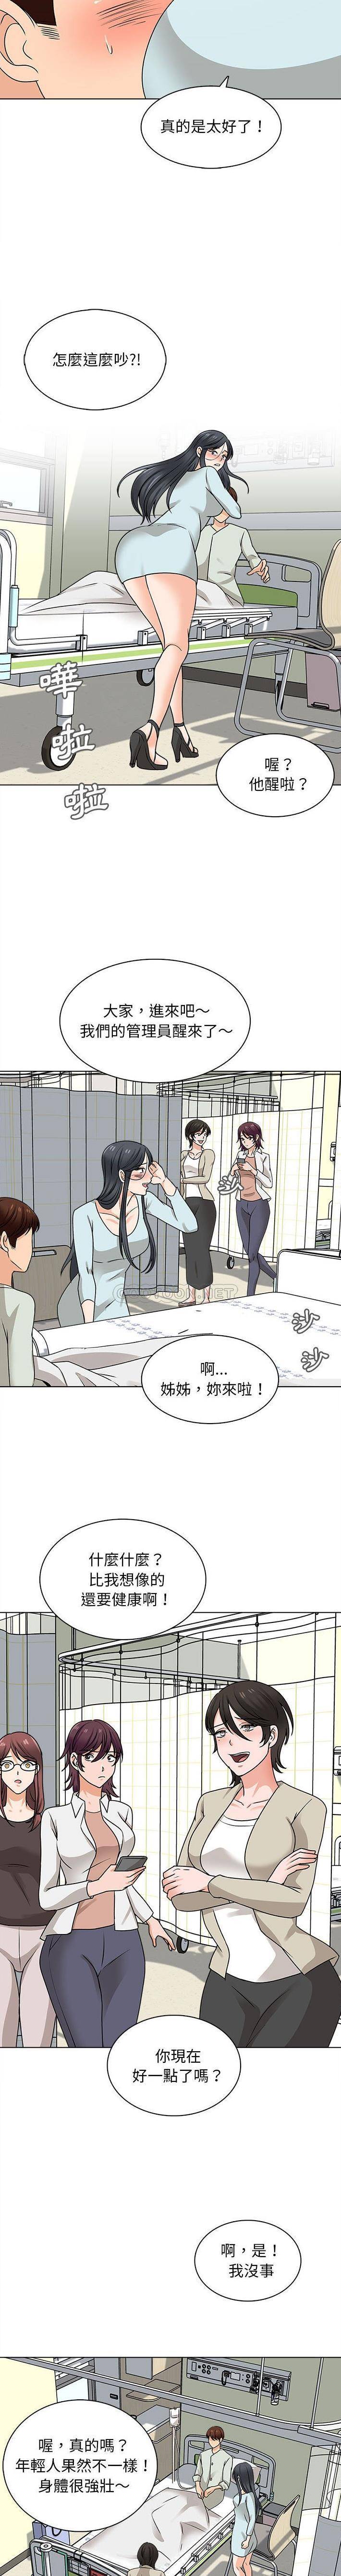 韩国污漫画 幸福公寓 第22话 11